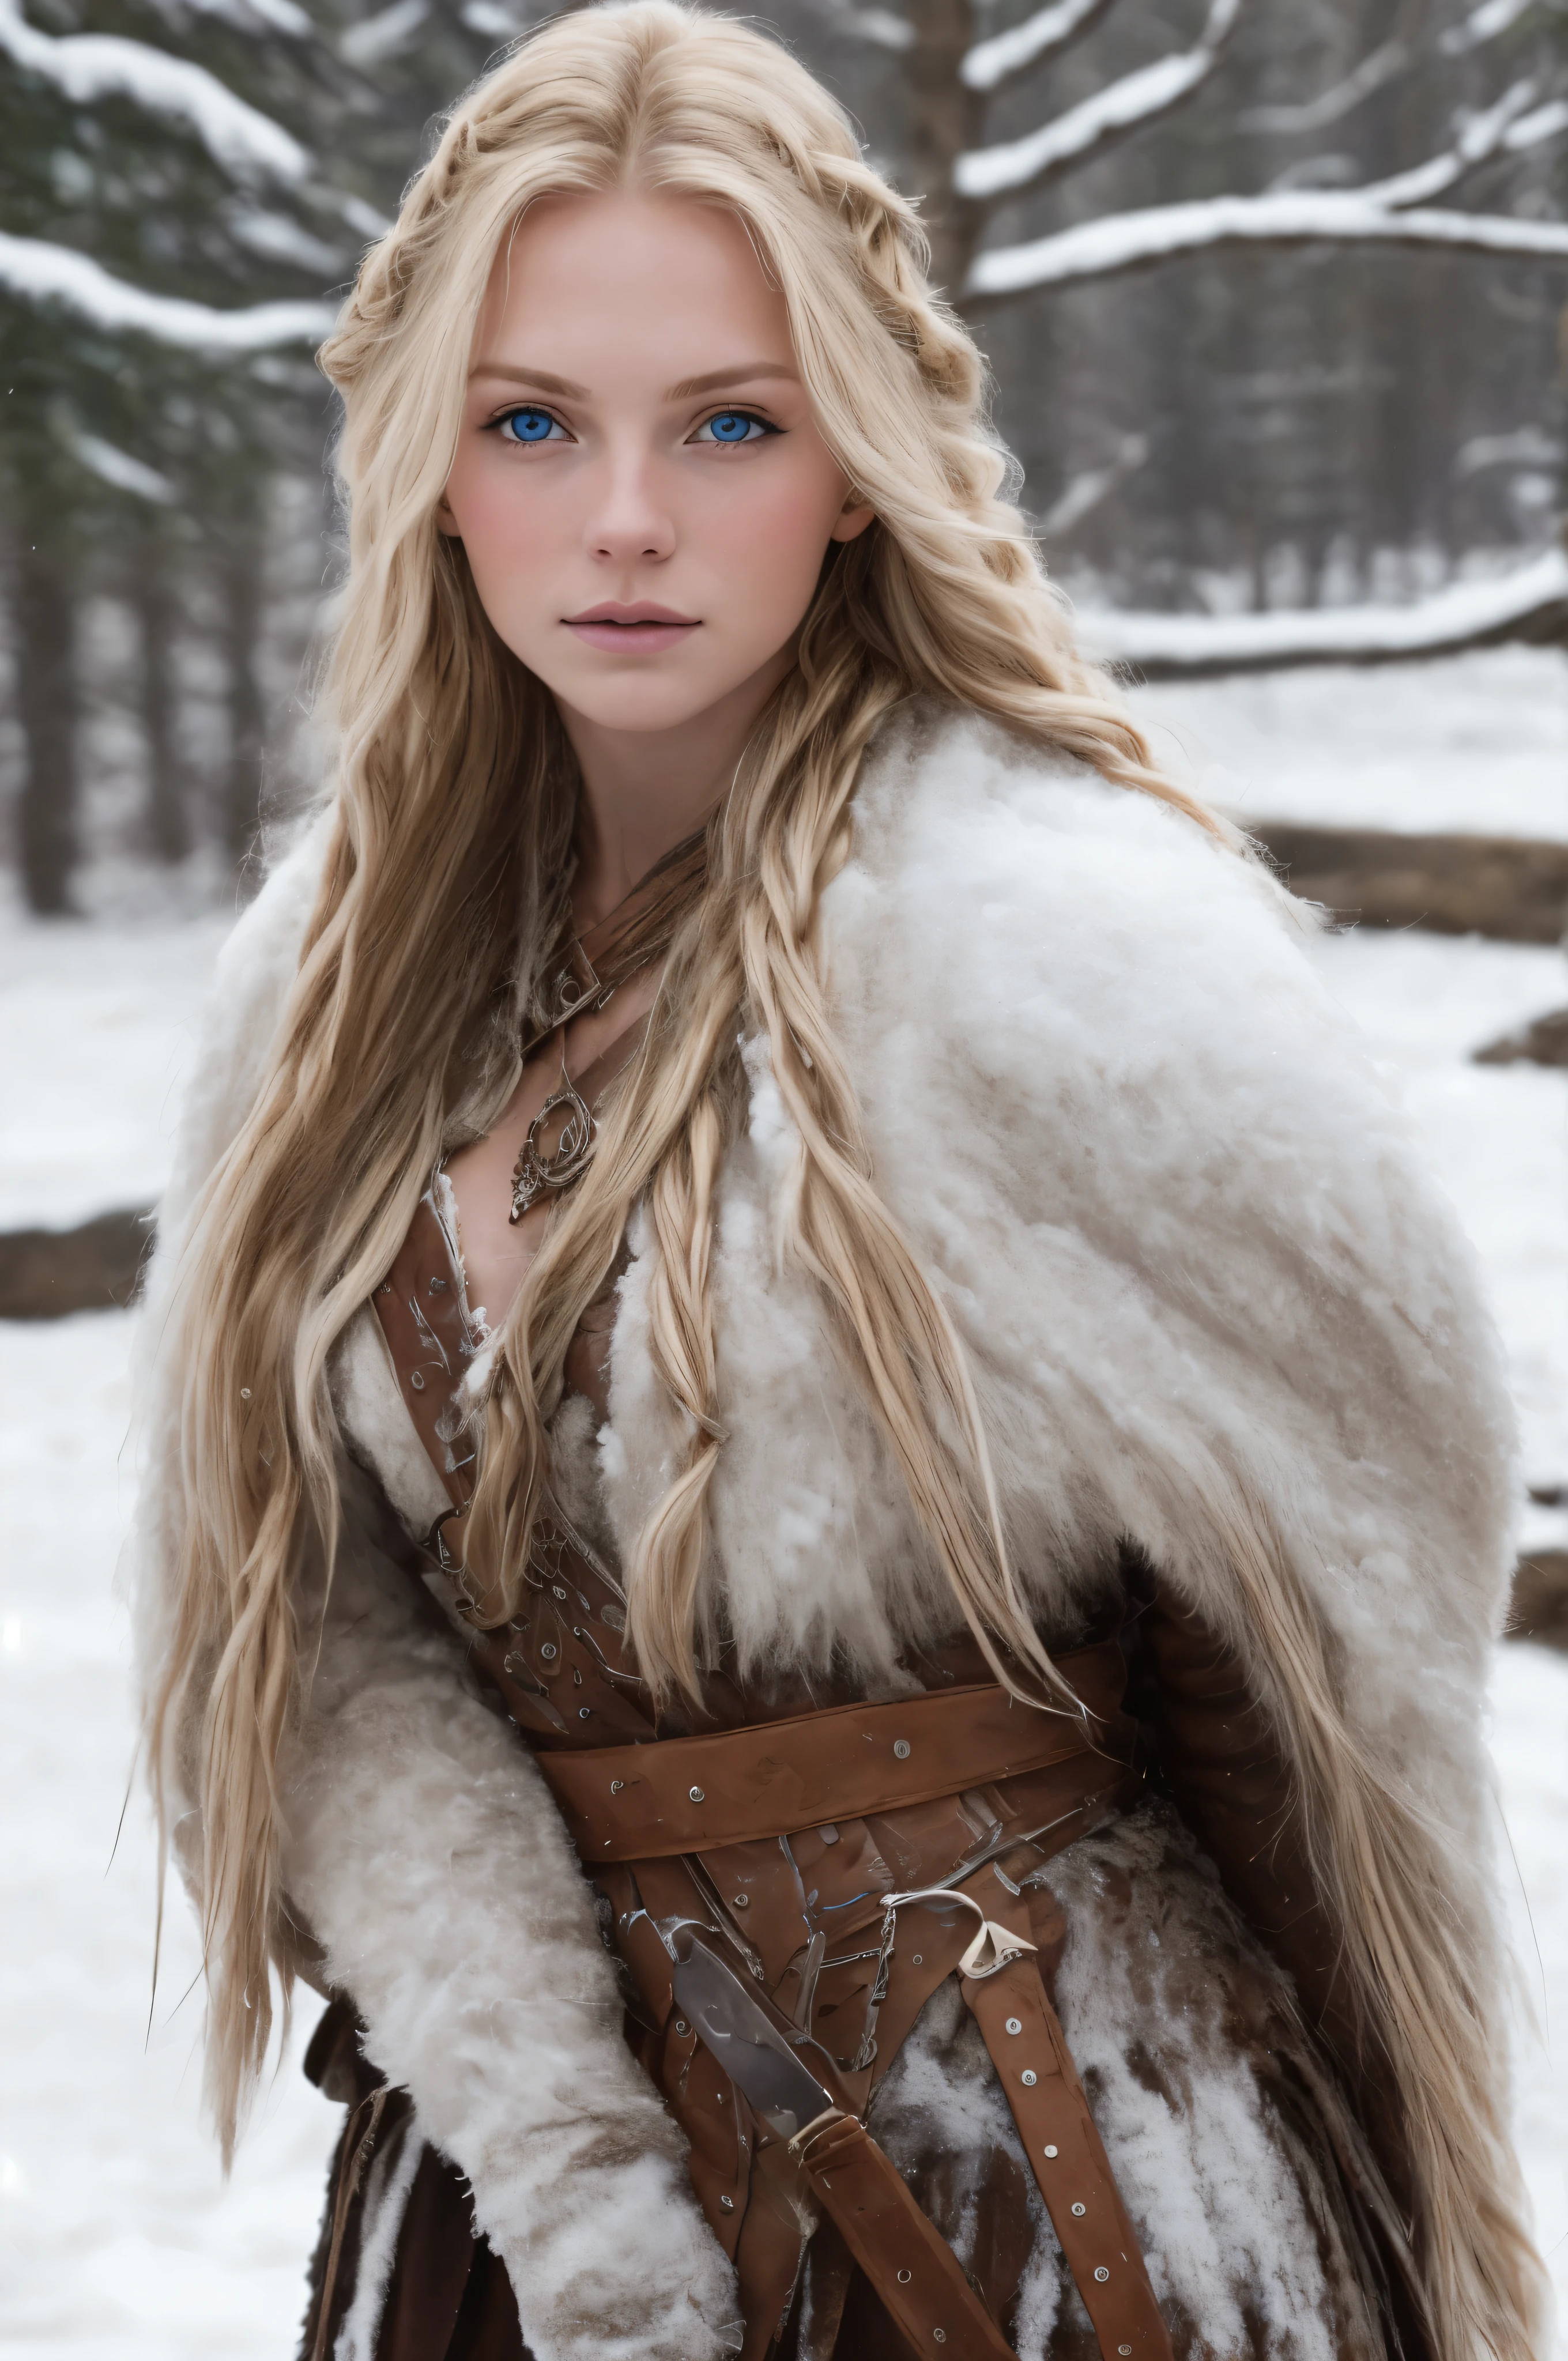 (реалистичный:1.2), аналоговый стиль фотографии, Скандинавская женщина-воин, фантастическая снежная обстановка, заплетенные светлые волосы, все тело, мягкий естественный свет, Мило и сексуально, удовольствие, детальное лицо и голубые глаза, отличное качество, шедевр, детальный северный фон, качество: 16 тысяч., RAW-фото